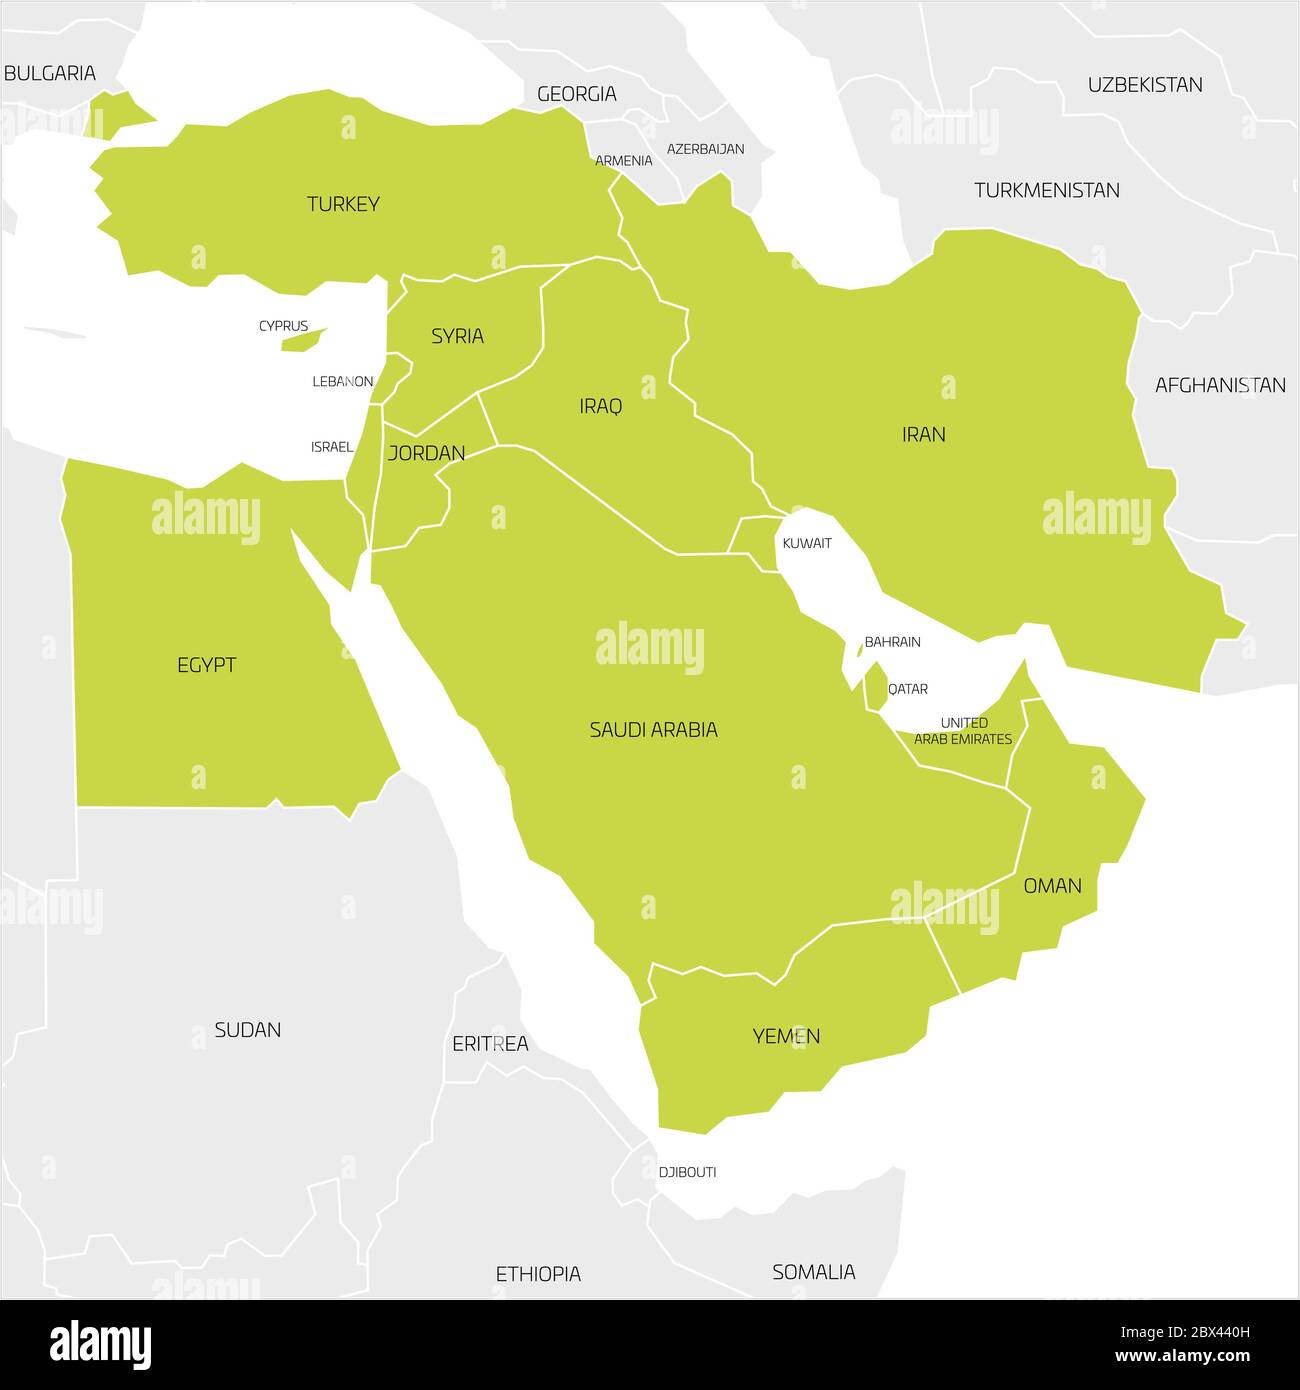 Mappa della regione transcontinentale del Medio Oriente o del Vicino Oriente con i paesi dell'Asia occidentale evidenziati in verde, Turchia, Cipro ed Egitto. Mappa piatta con bordi bianchi sottili. Illustrazione Vettoriale